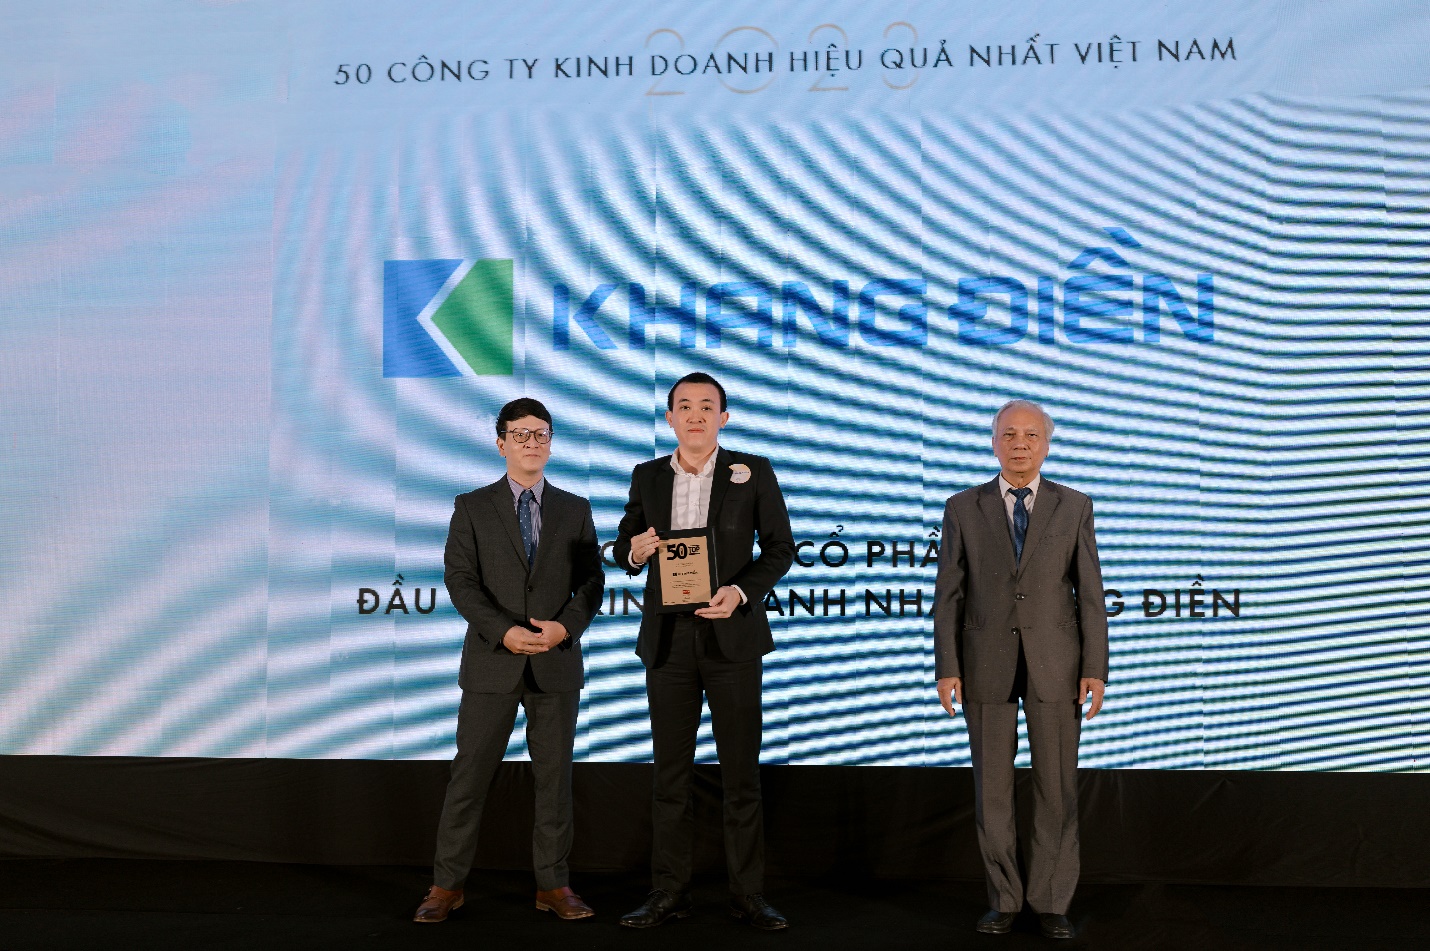 Tập Đoàn Khang Điền (KDH) nhận danh hiệu “TOP 50 Công ty kinh doanh hiệu quả nhất Việt Nam 2023” - Ảnh 1.